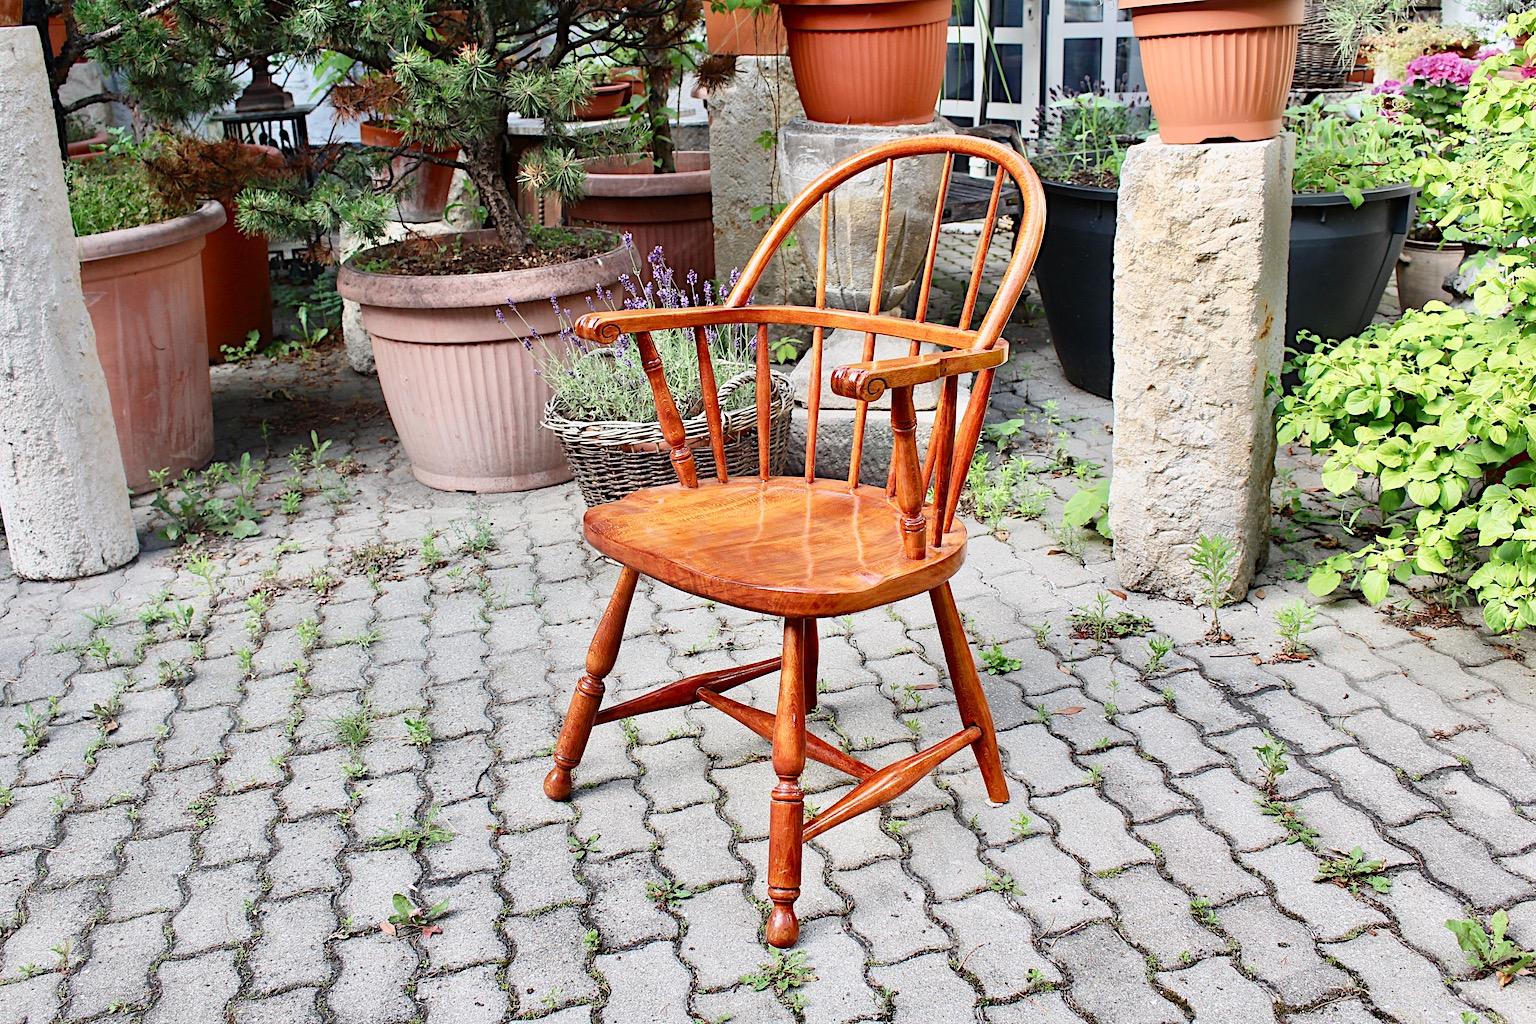 Art Deco Vintage Sessel aus brauner Buche oder Windsor-Stuhl, entworfen von Josef Frank, um 1925, Österreich.
Der Sessel wurde aus massiver Buche gefertigt, kirschrot gebeizt und naturlackiert. Der warme Braunton könnte also gut zu einem